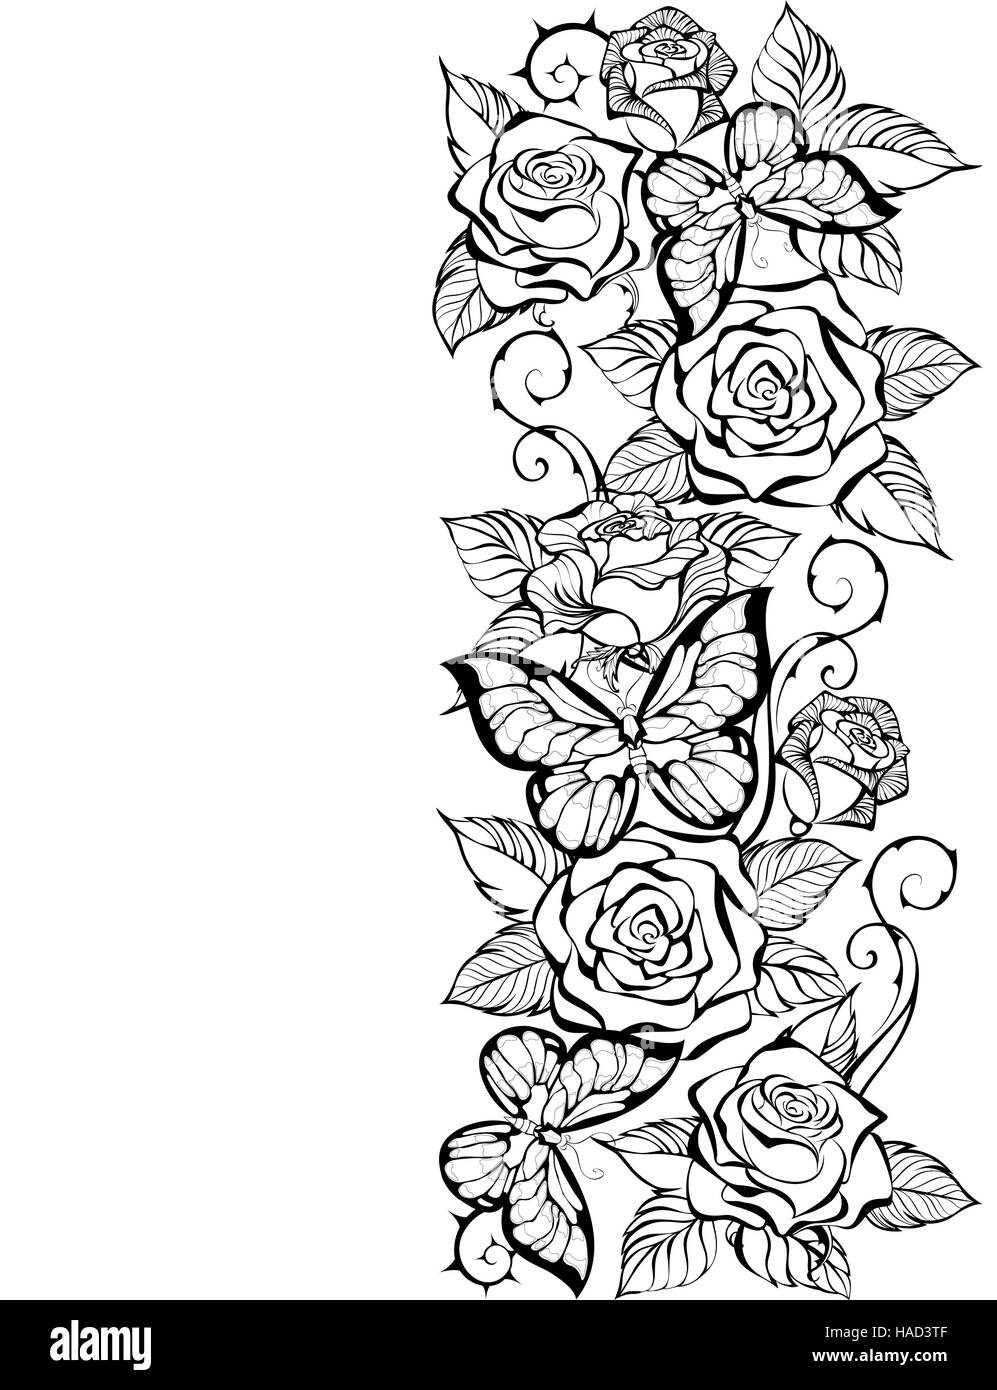 Confine del contorno di Rose e farfalle su uno sfondo bianco. Libro da colorare. Design con le Rose e farfalle. Illustrazione Vettoriale